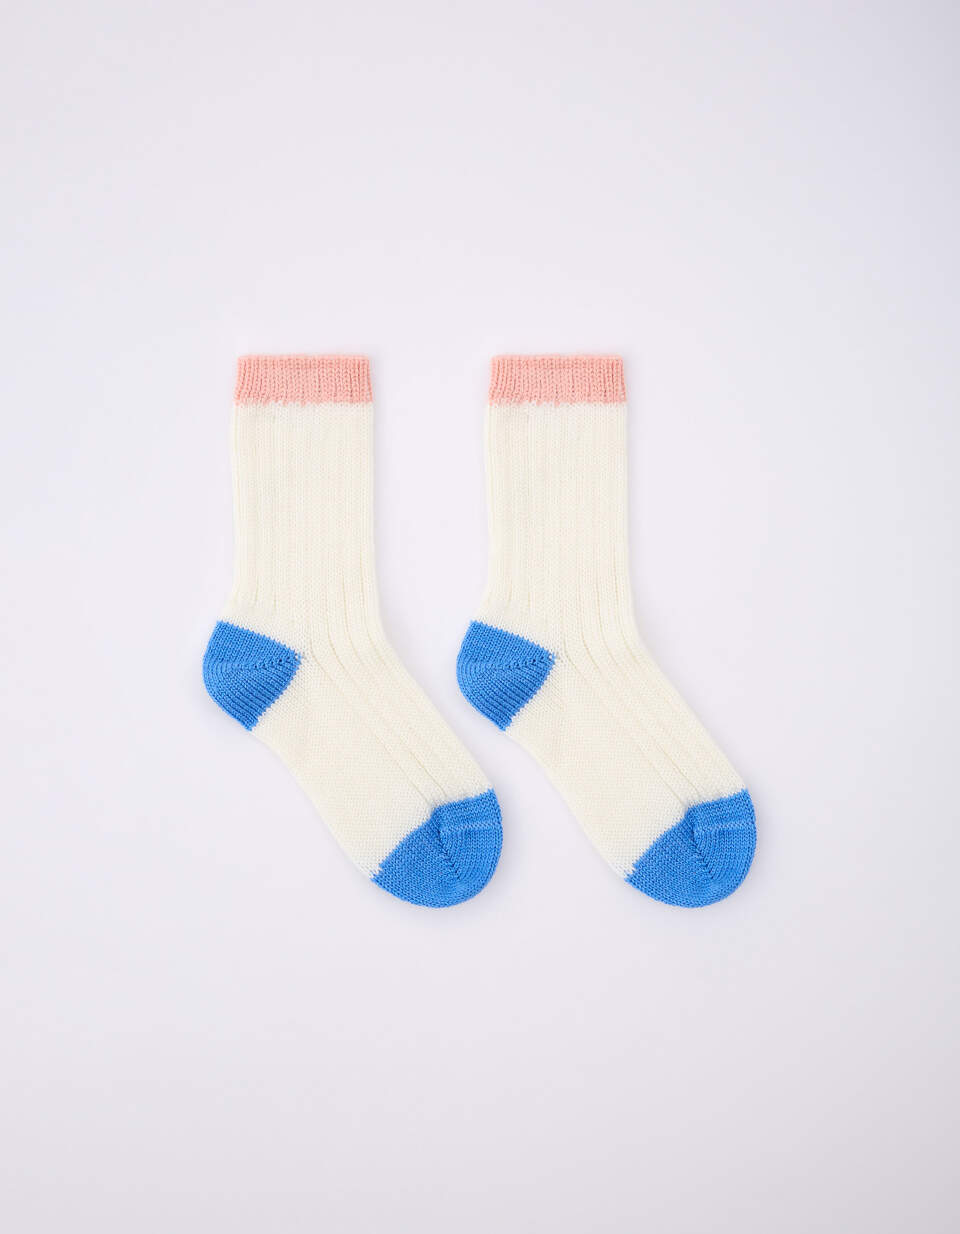 Вязаные носки шерстяные для девочек женские шерстяные носки вязаные носки носки башмак подарок 8 марта